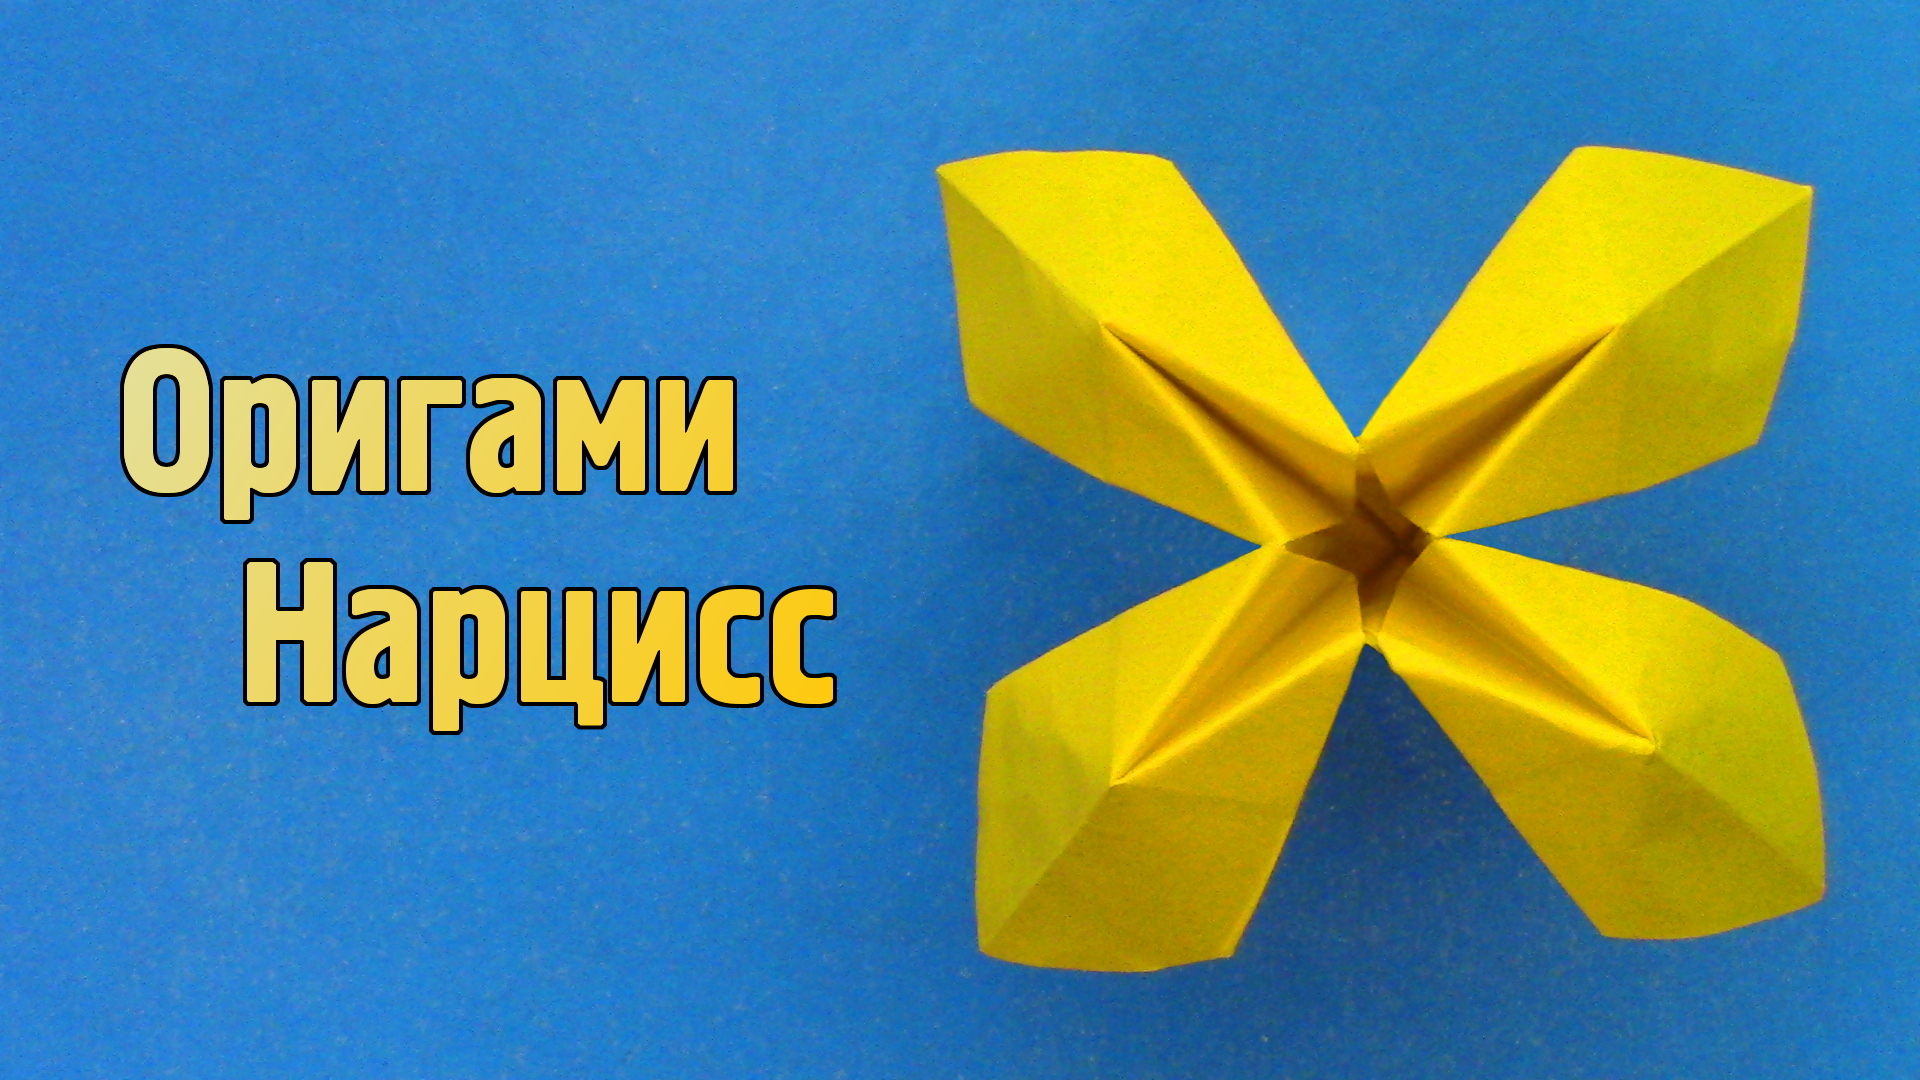 Как сделать Нарцисс из бумаги своими руками | Оригами Нарцисс для детей | Объемные Цветы без клея